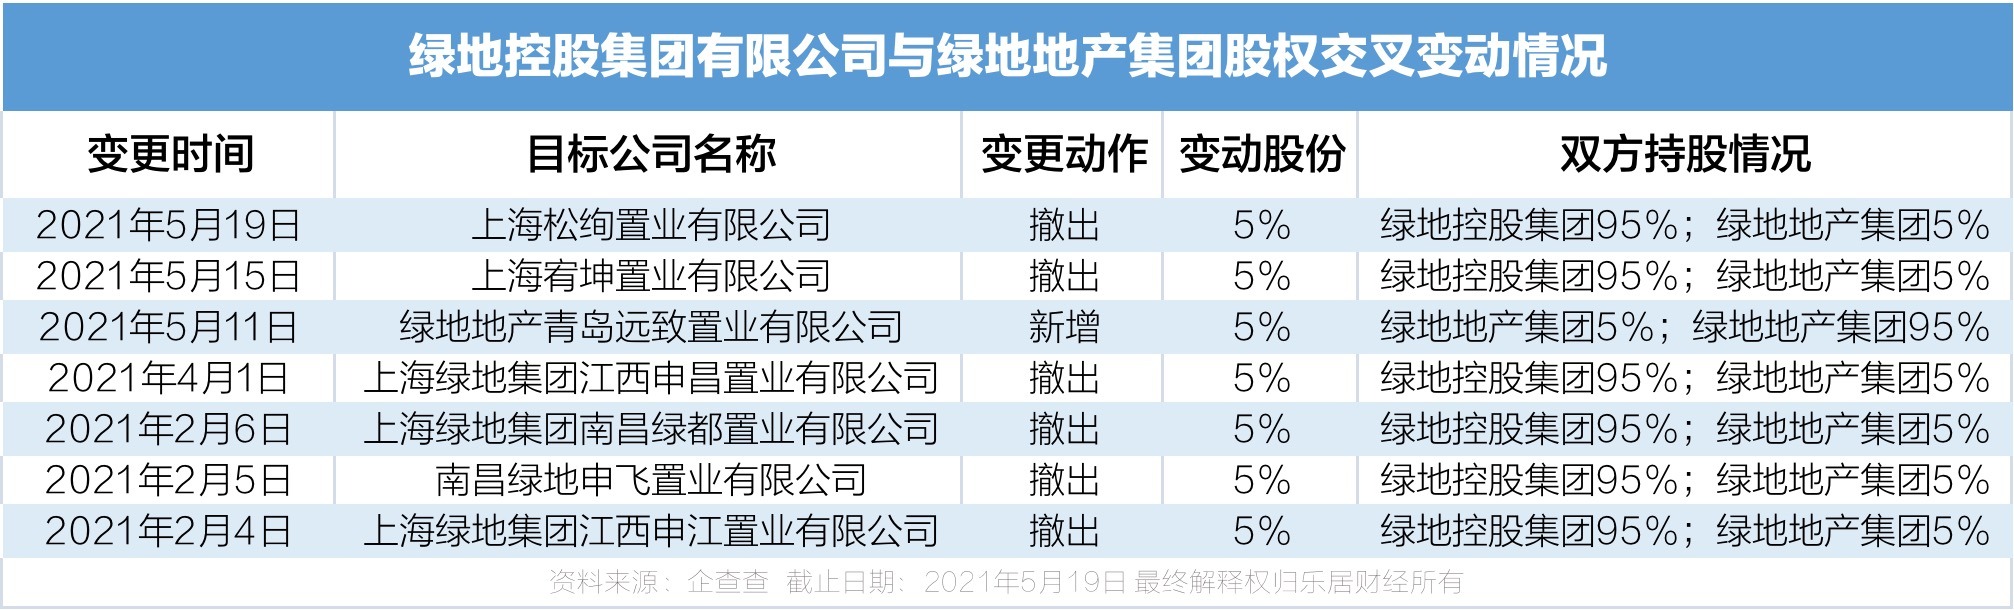 绿地集团在上海联合产权交易所挂牌拟增资扩股(图)